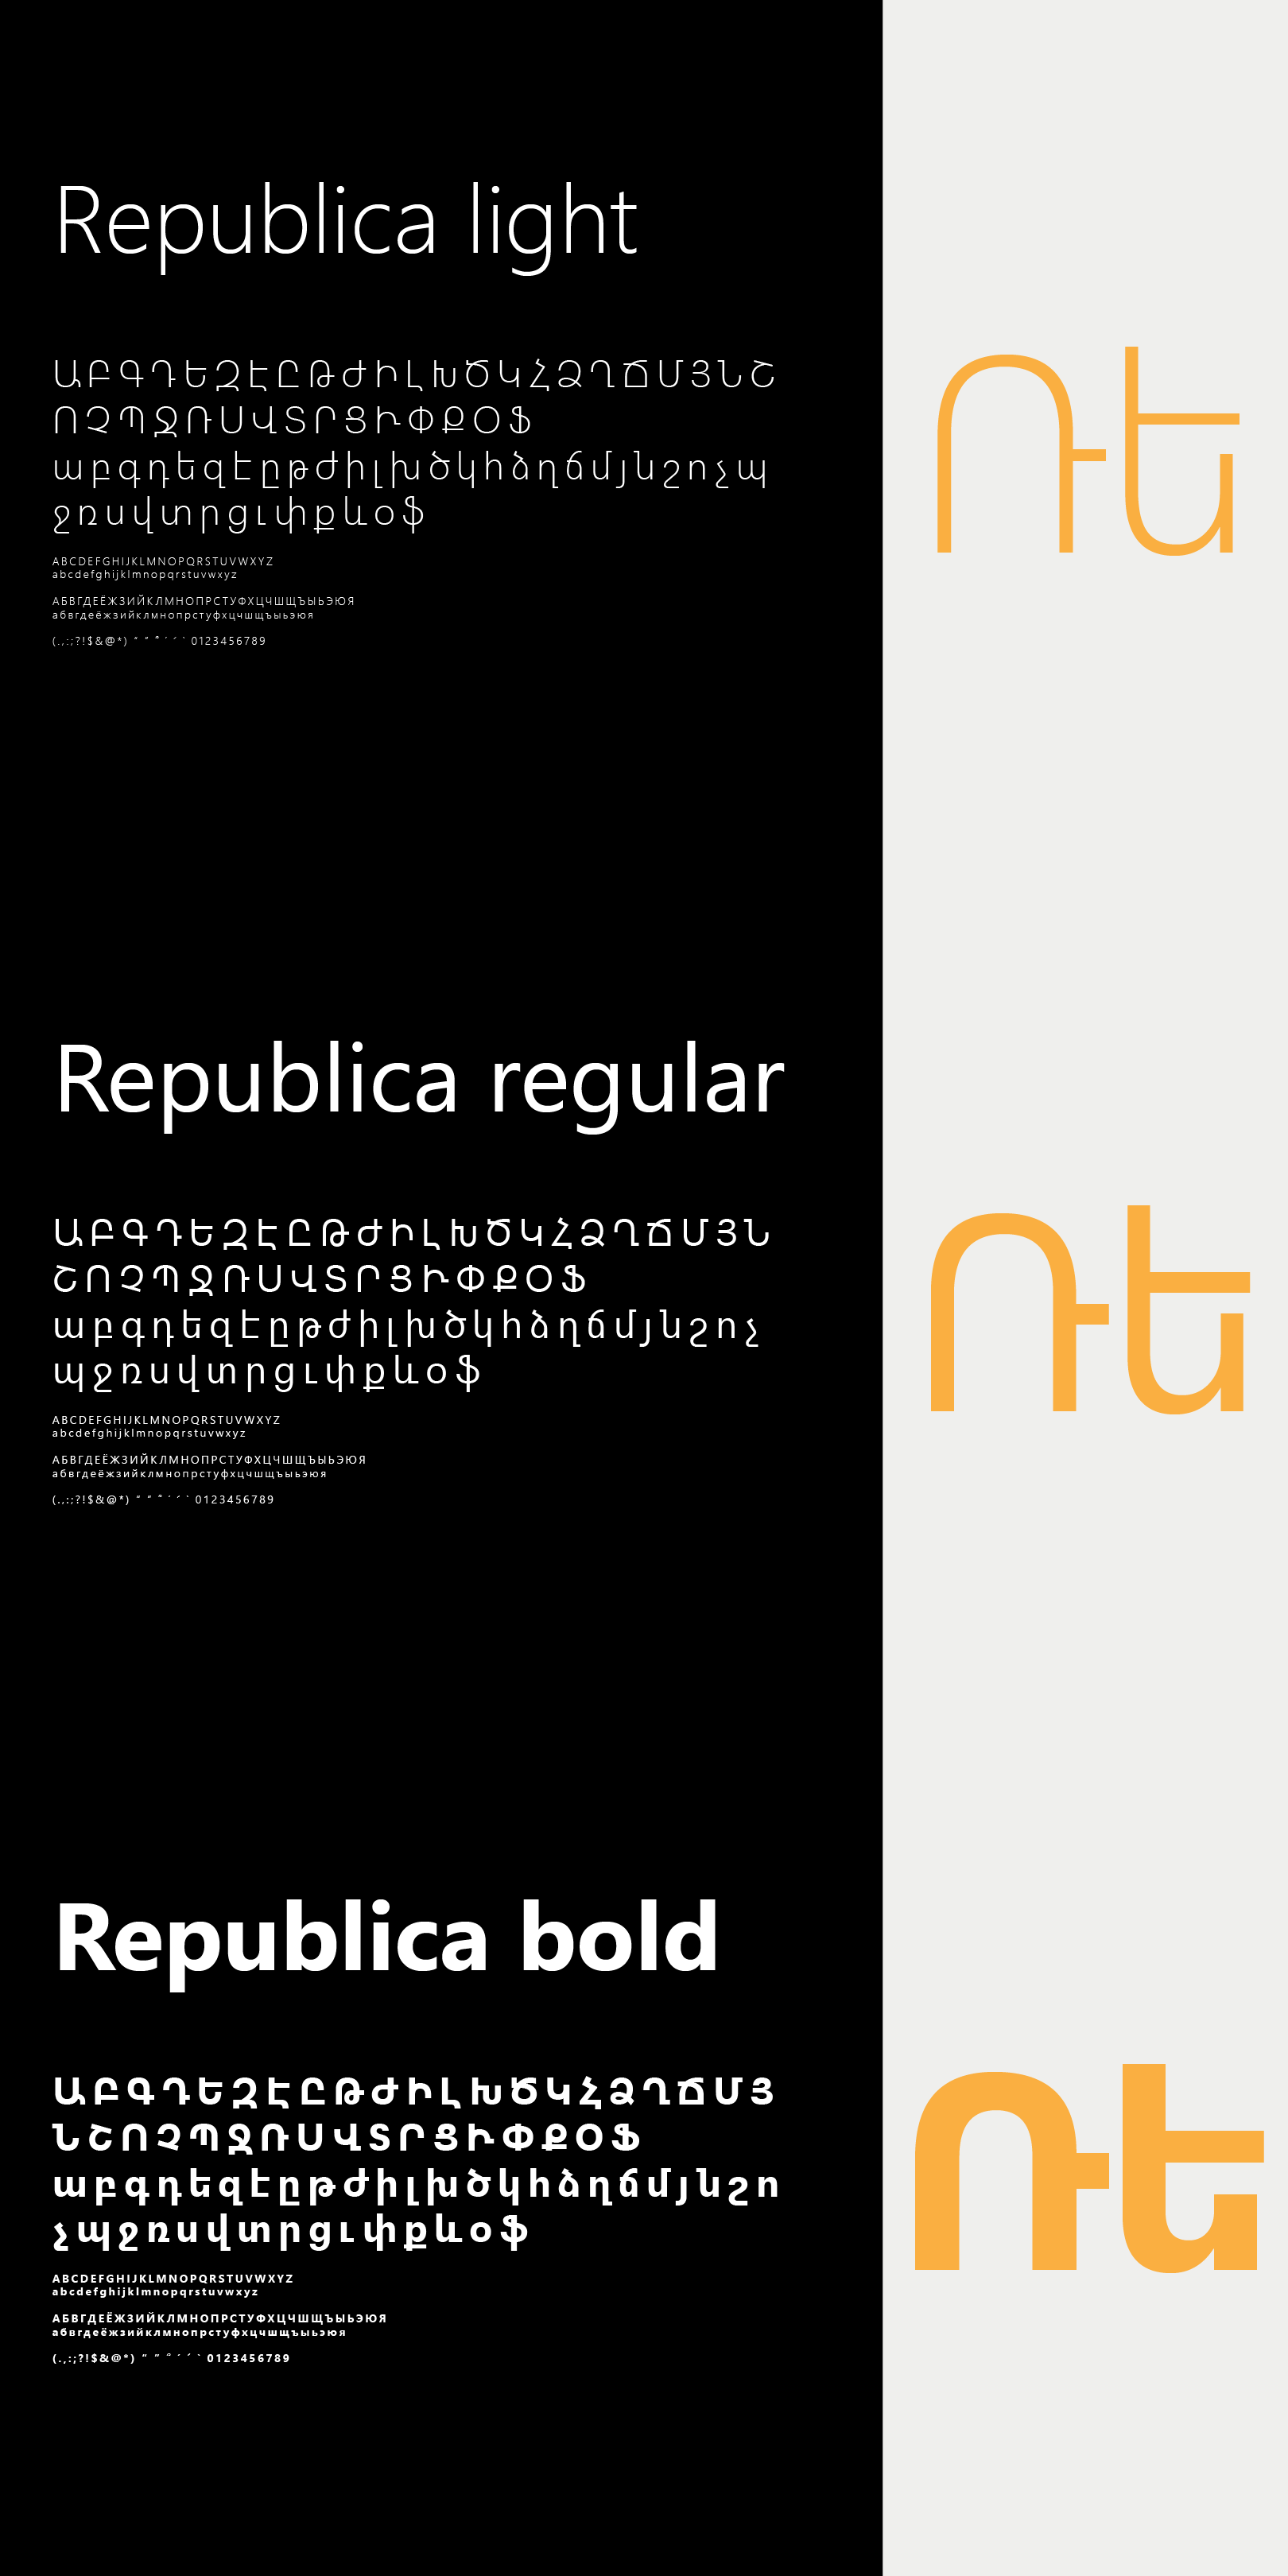 Republica hotel branding and logo design by Indigo branding